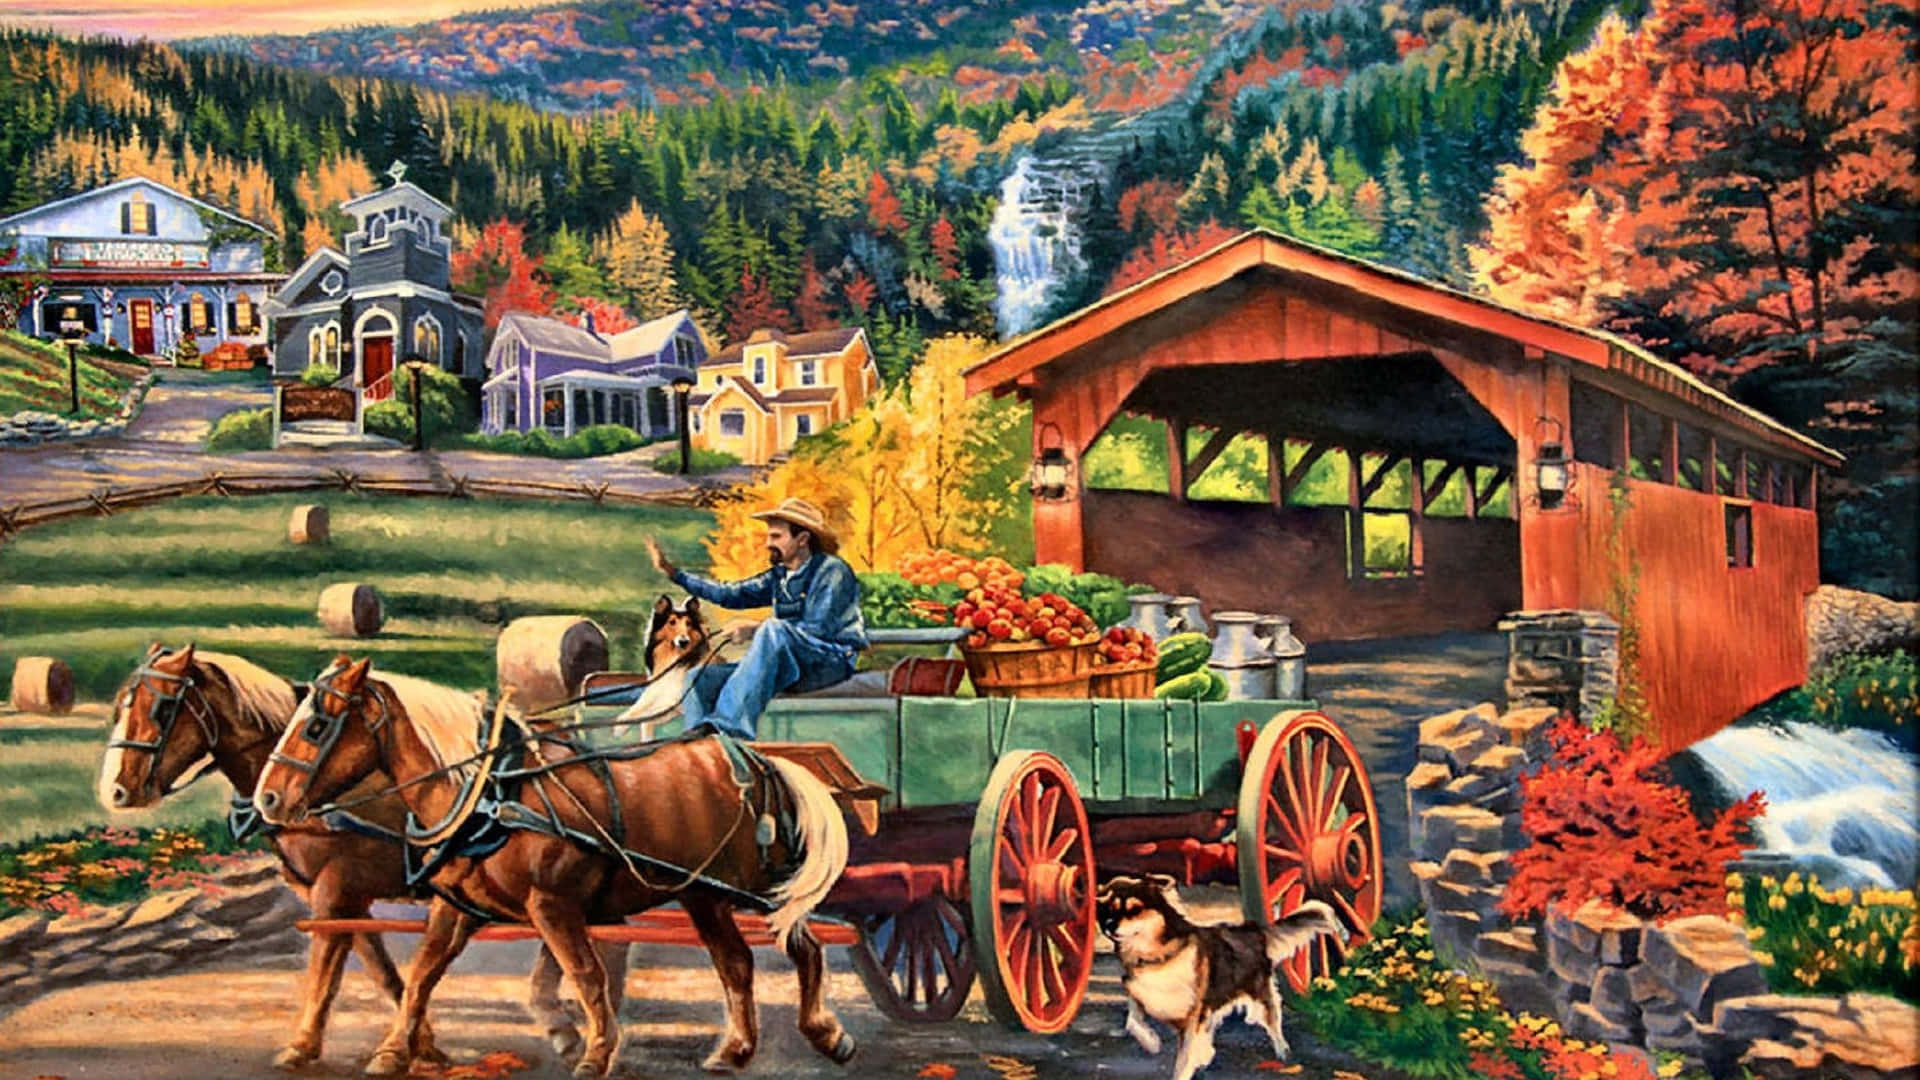 Scenic Fall Harvest Landscape Wallpaper